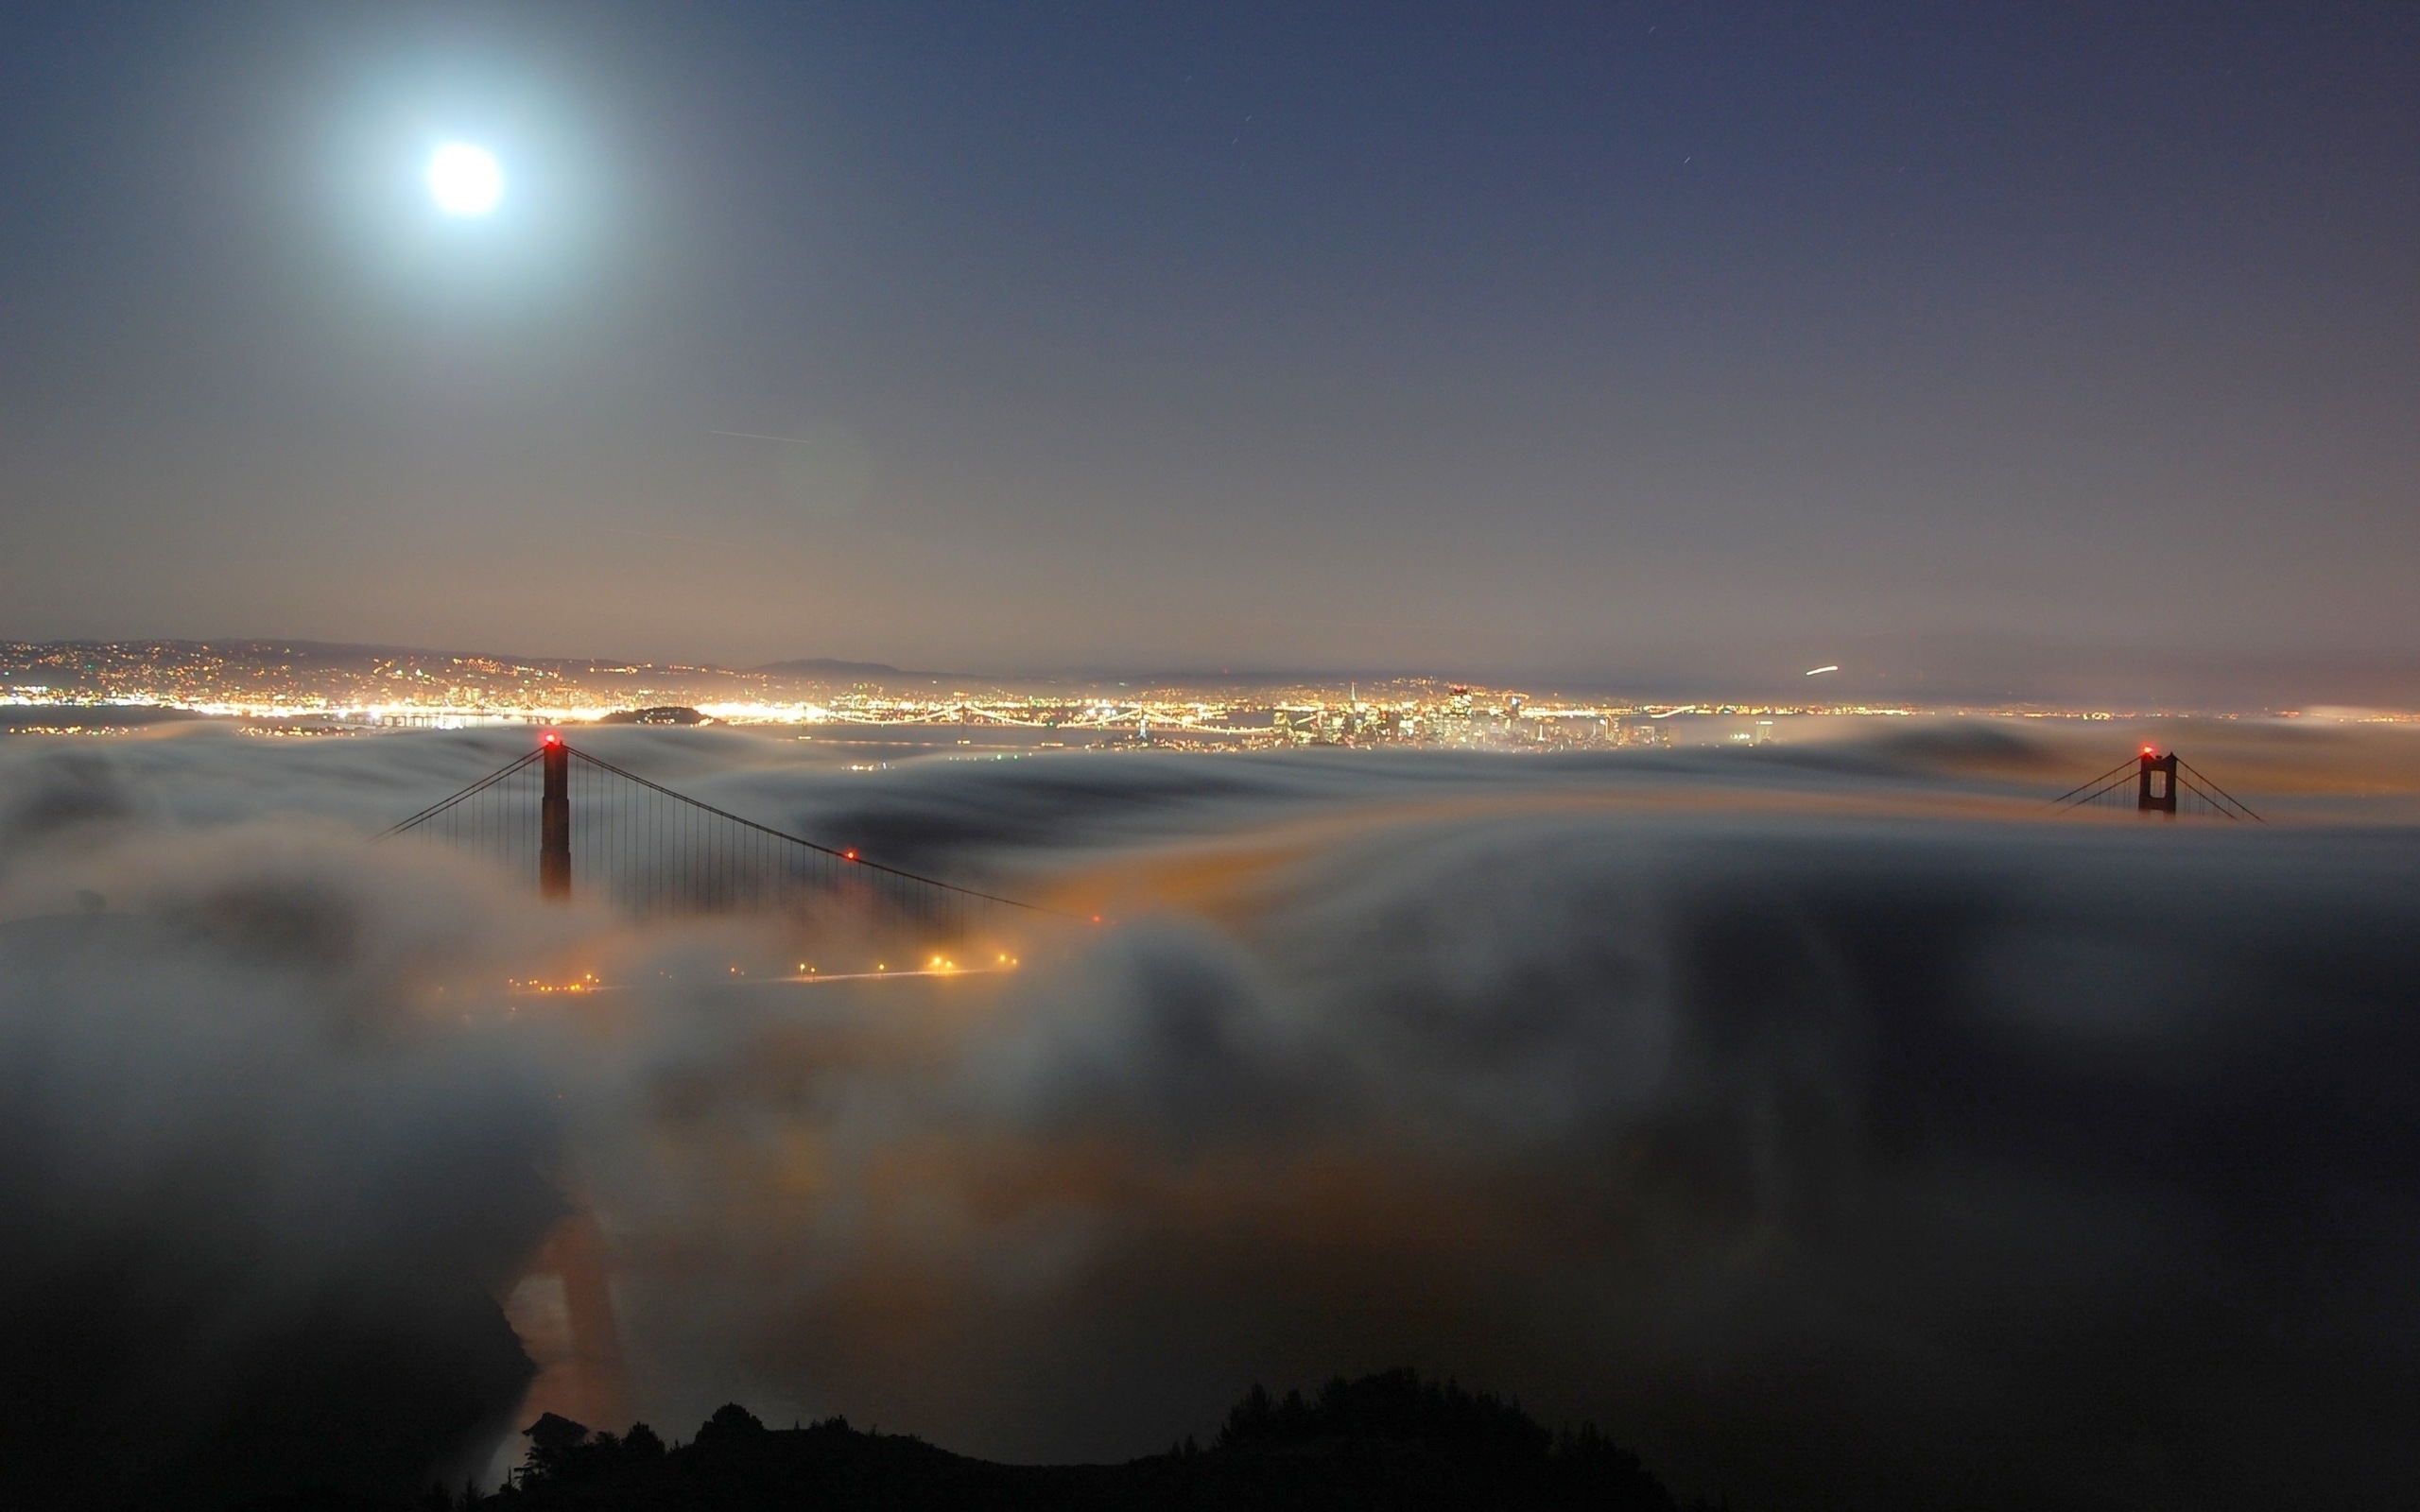 3d обои Cан-франциско, золотые ворота / San Francisco, Golden gate, bridge, ночной вид на мост под облаками  луна # 51446